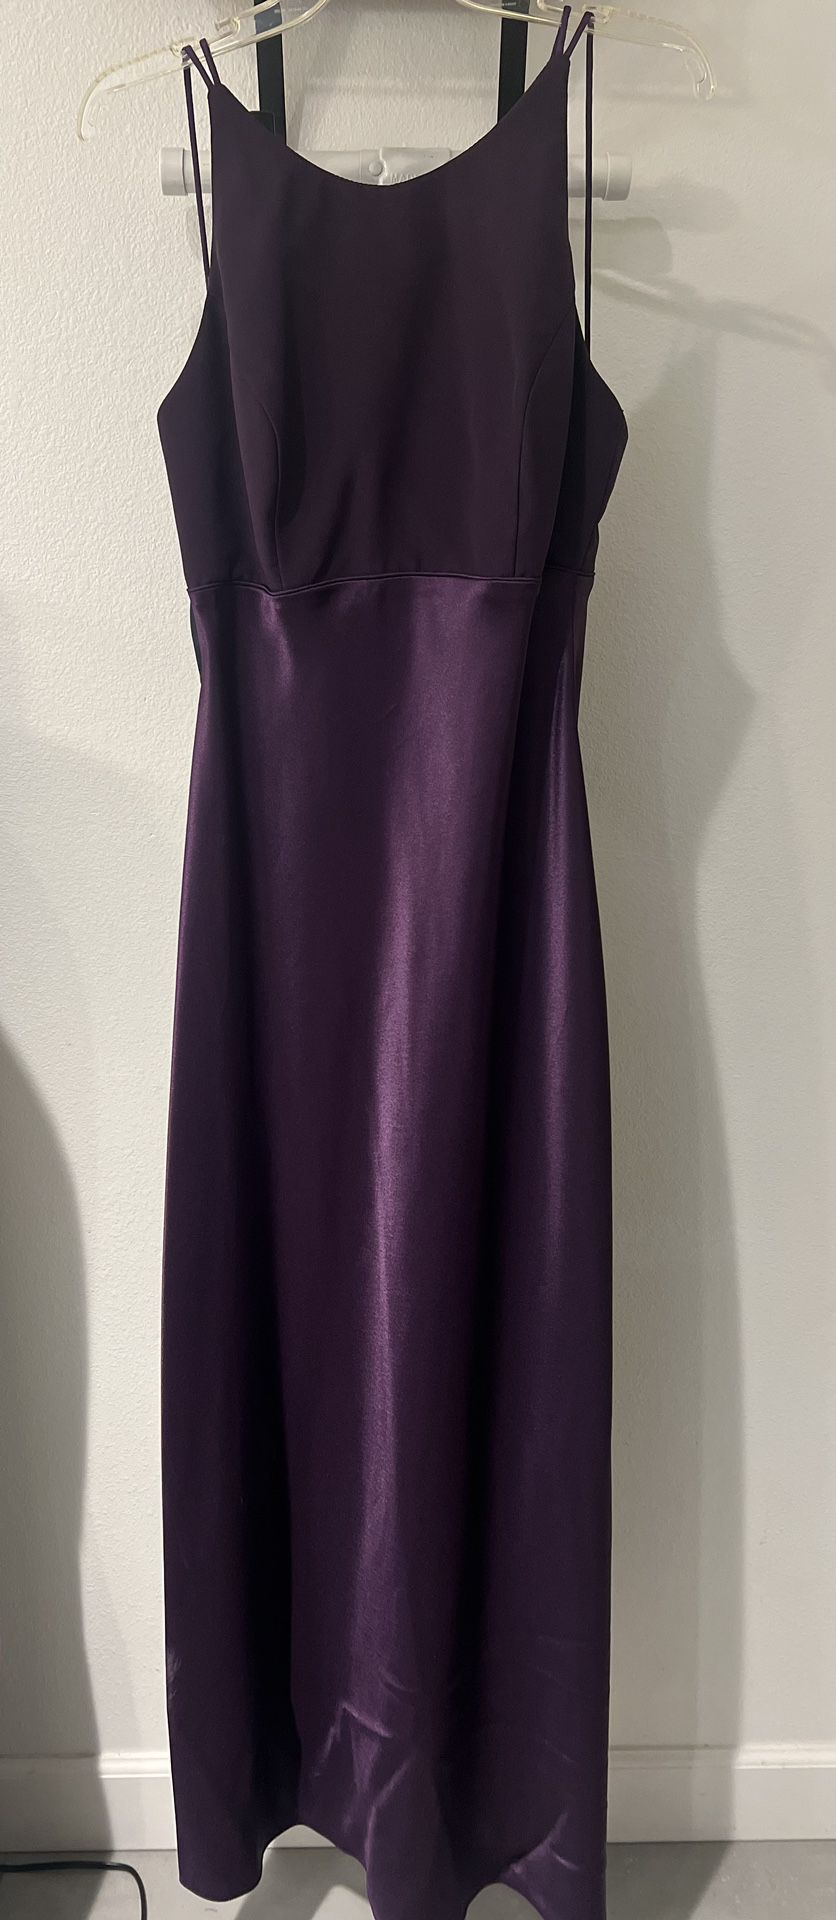 Formal Purple Dress Size 11/12 